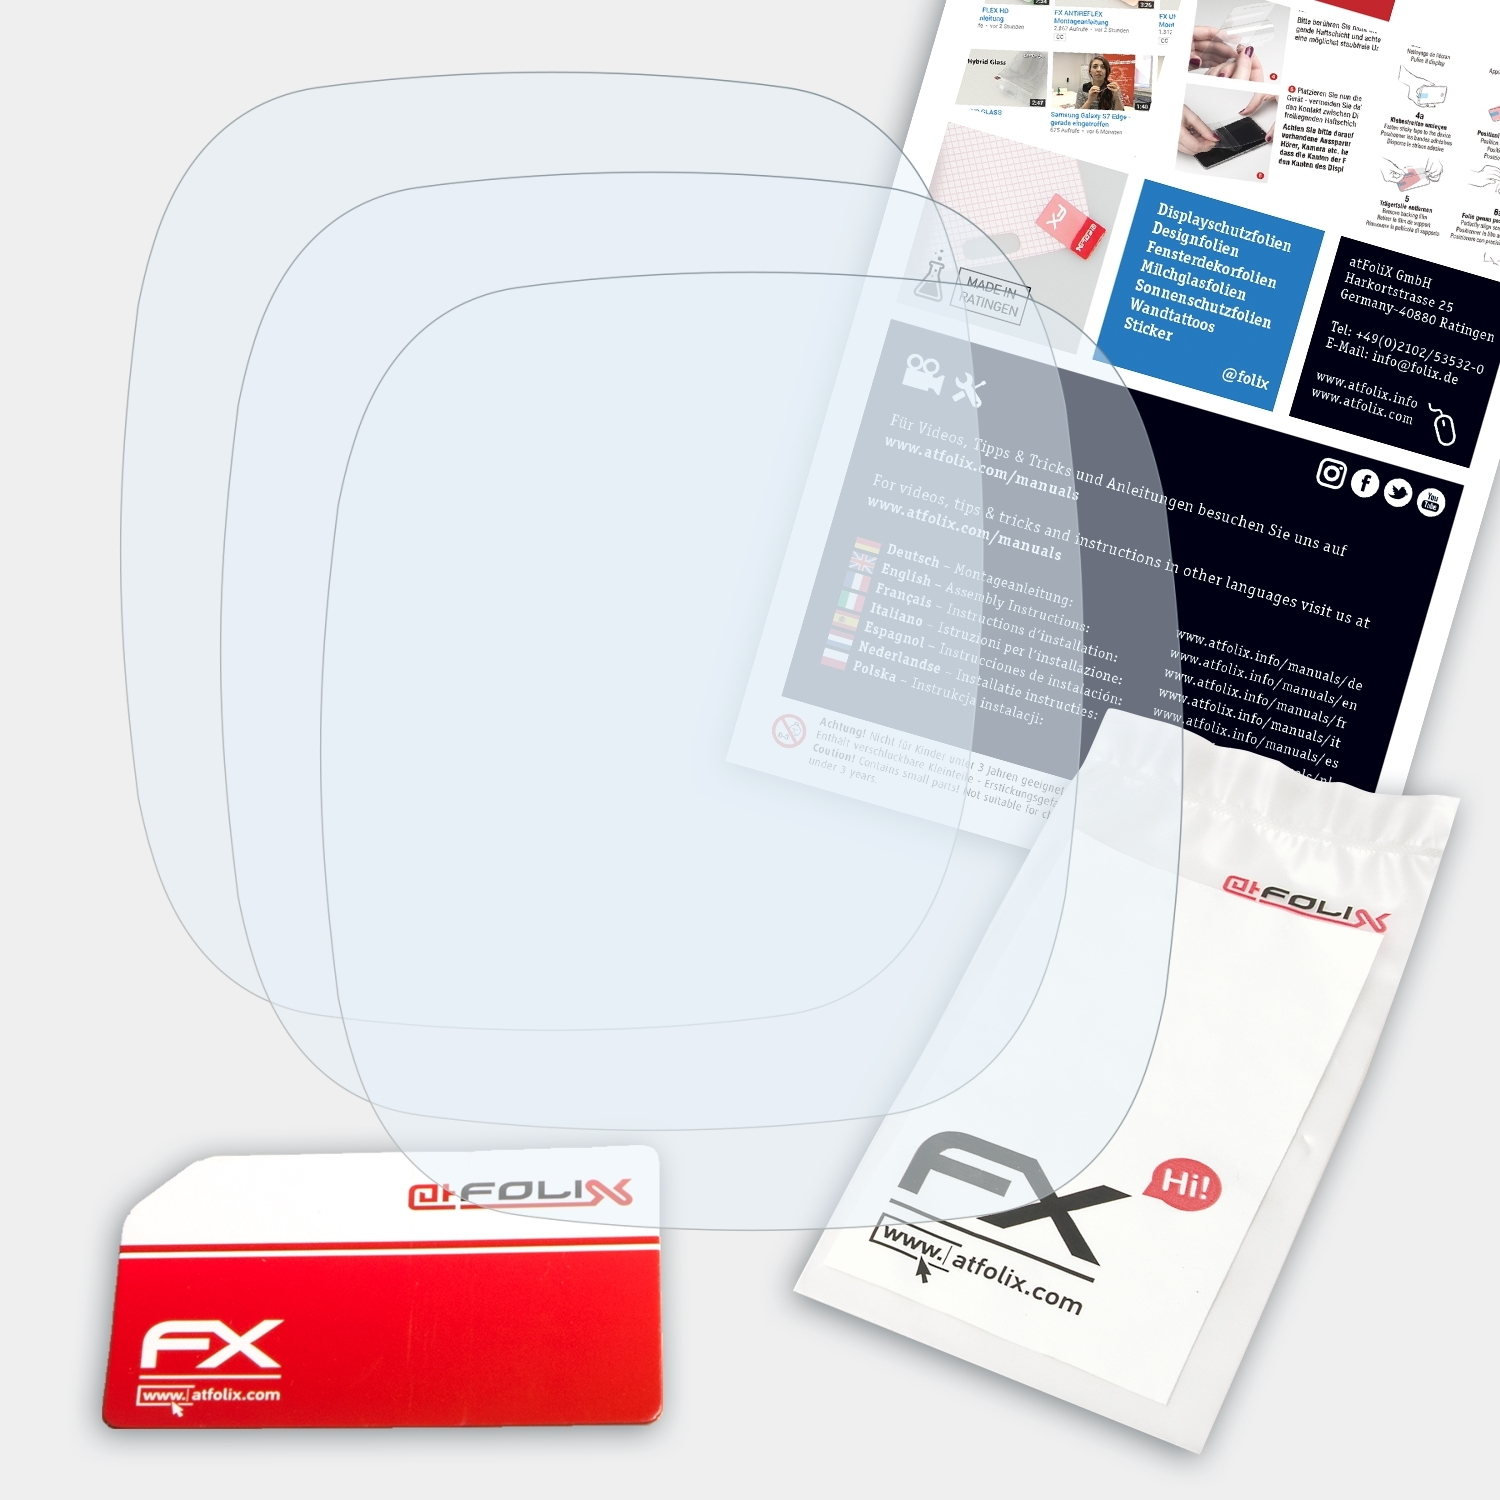 ATFOLIX 3x FX-Clear Sigma Displayschutz(für PC 26.14)